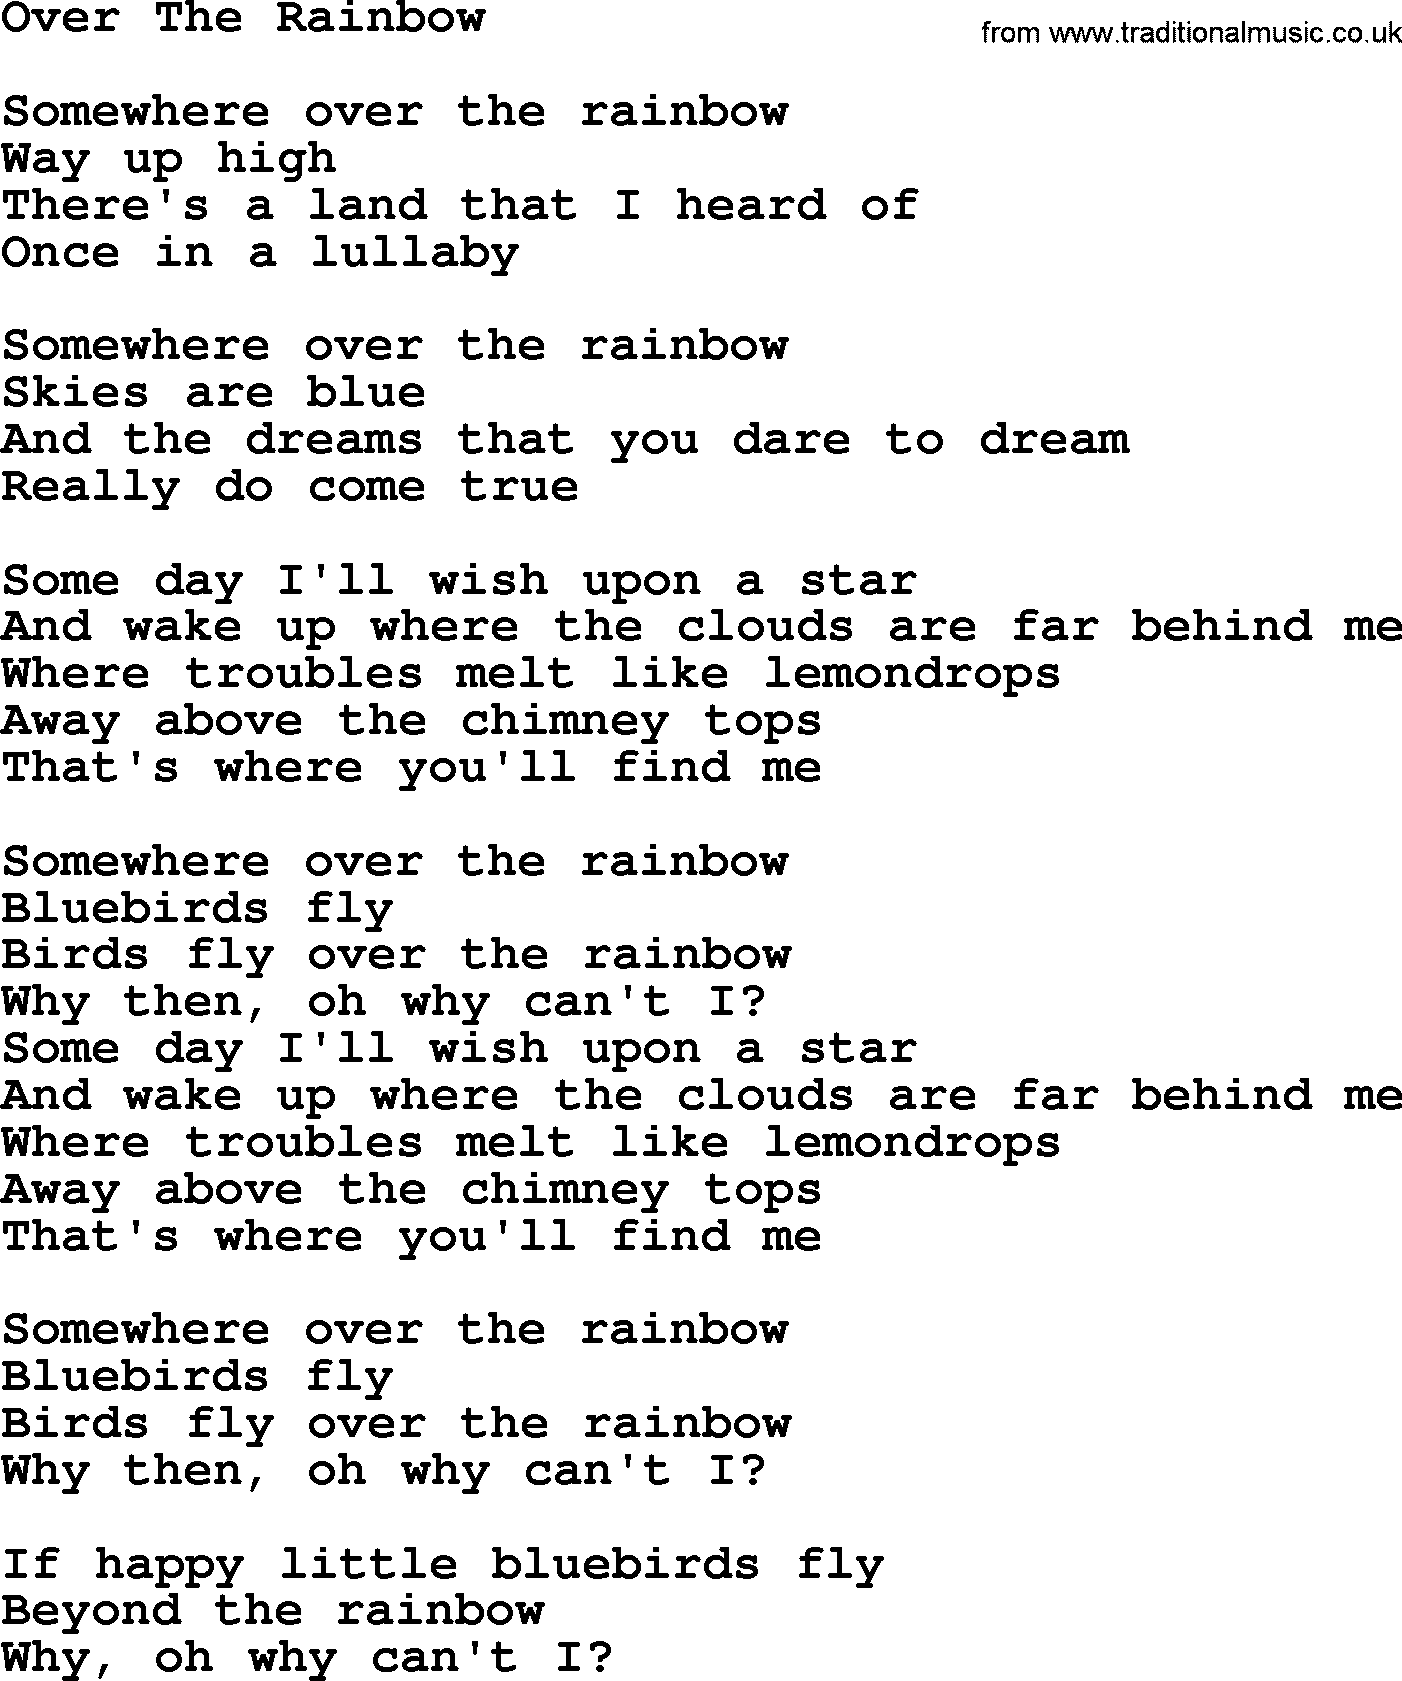 Willie Nelson song: Over The Rainbow lyrics